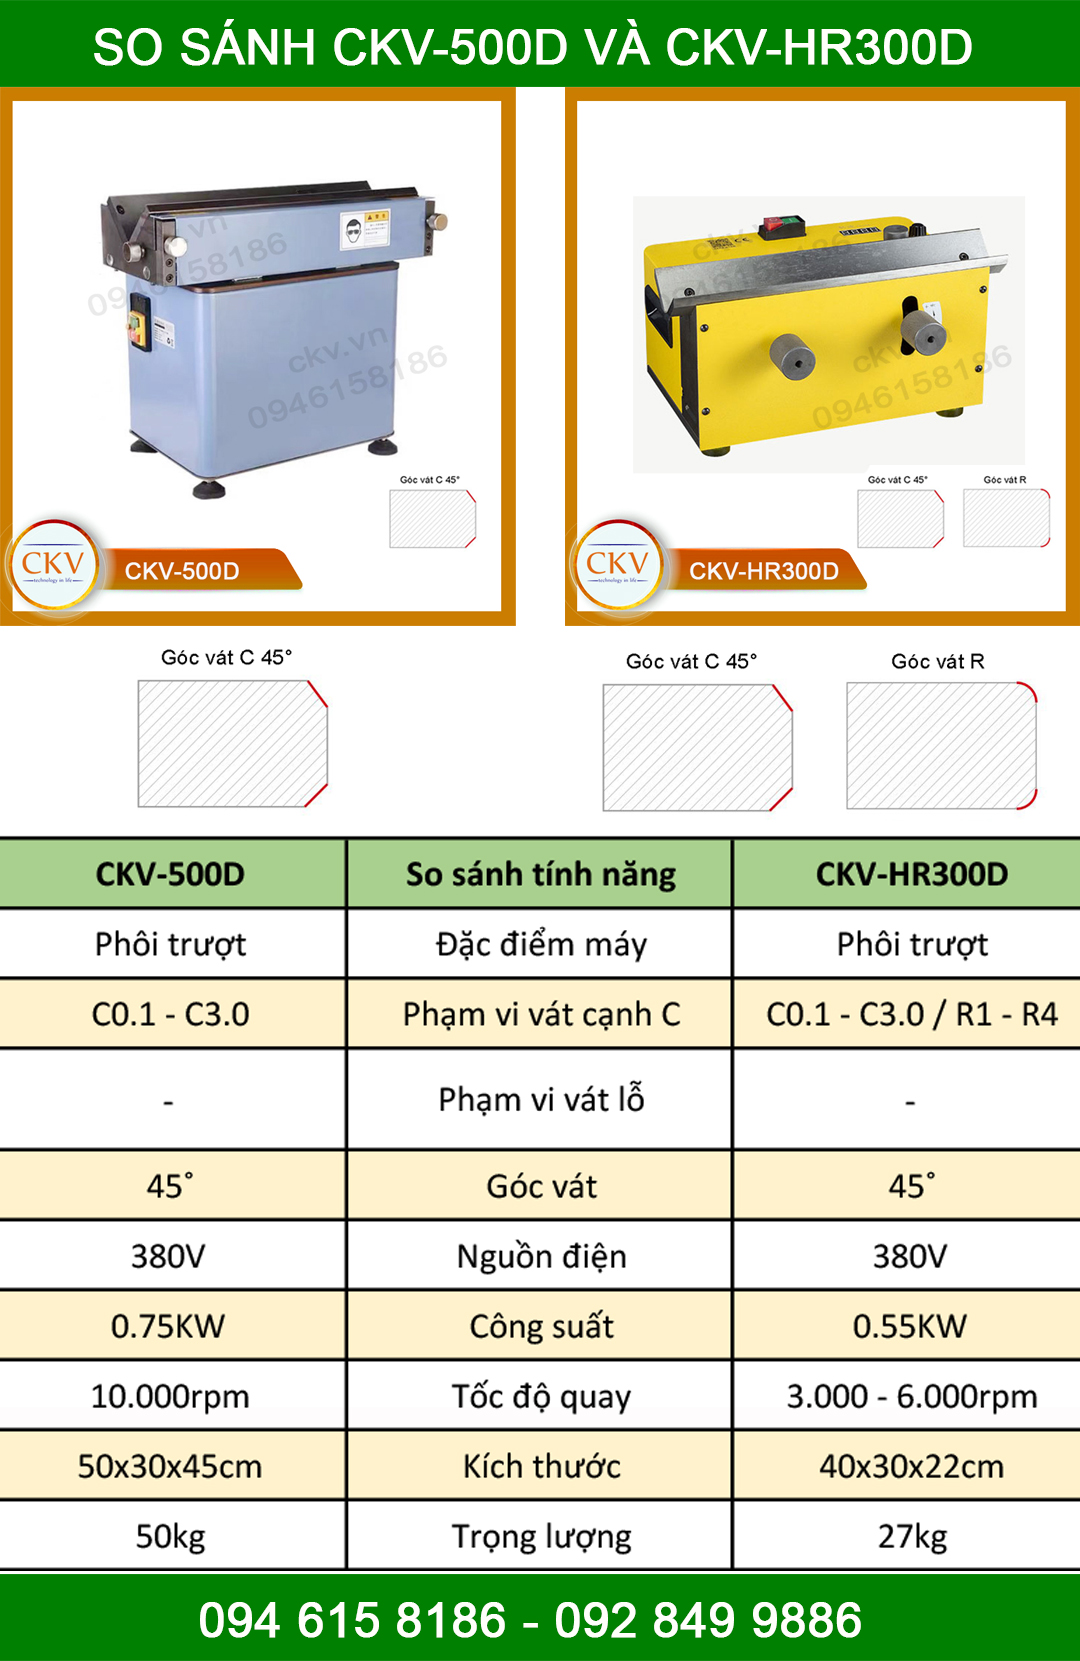 So sánh CKV-500D và CKV-HR300D